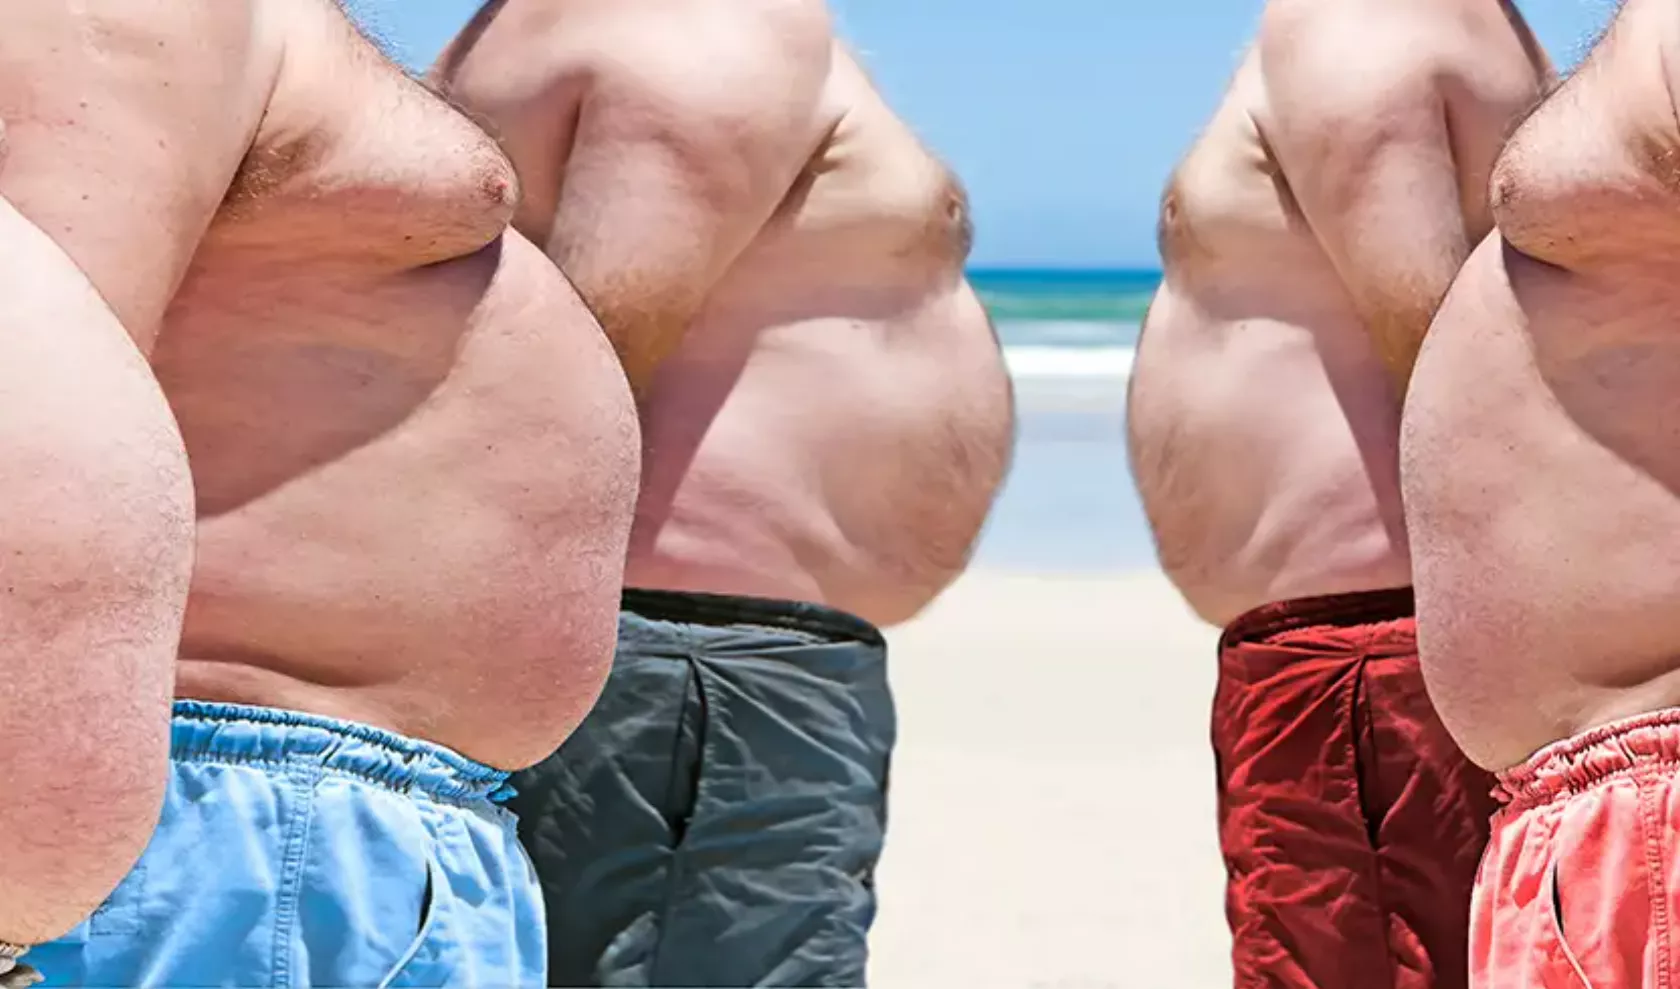 Fünf Männer mit dicken Bäuchen im Profil am Strand.